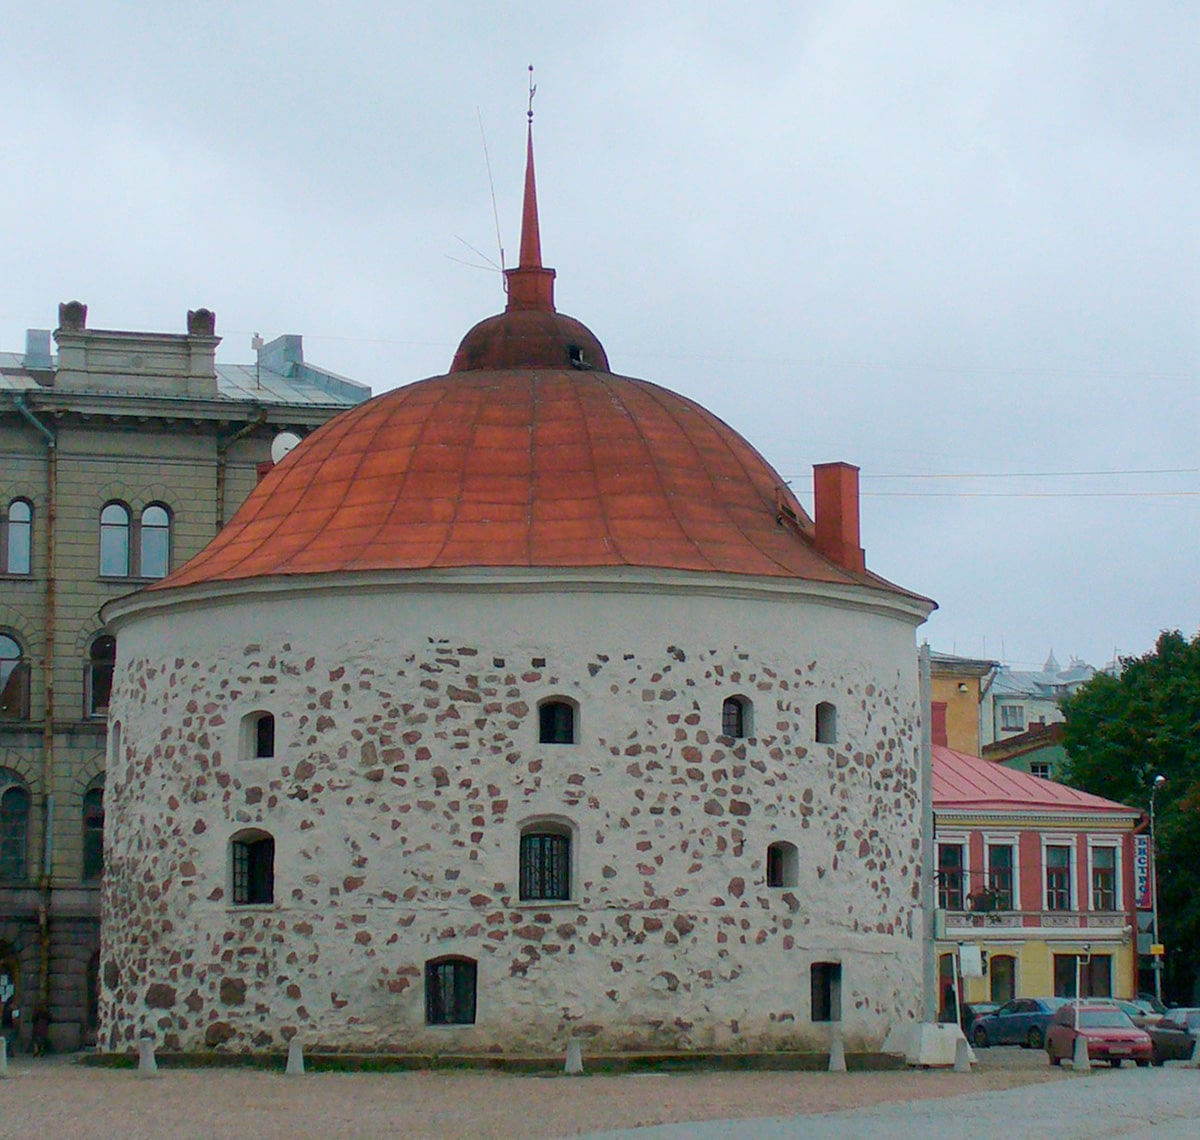 Круглая башня — каменная артиллерийская башня рондельного типа, одна из двух сохранившихся боевых башен средневековой Выборгской крепости. Построена в 1547—1550 годах инженером-фортификатором Ханном (Гансом) Бергеном.